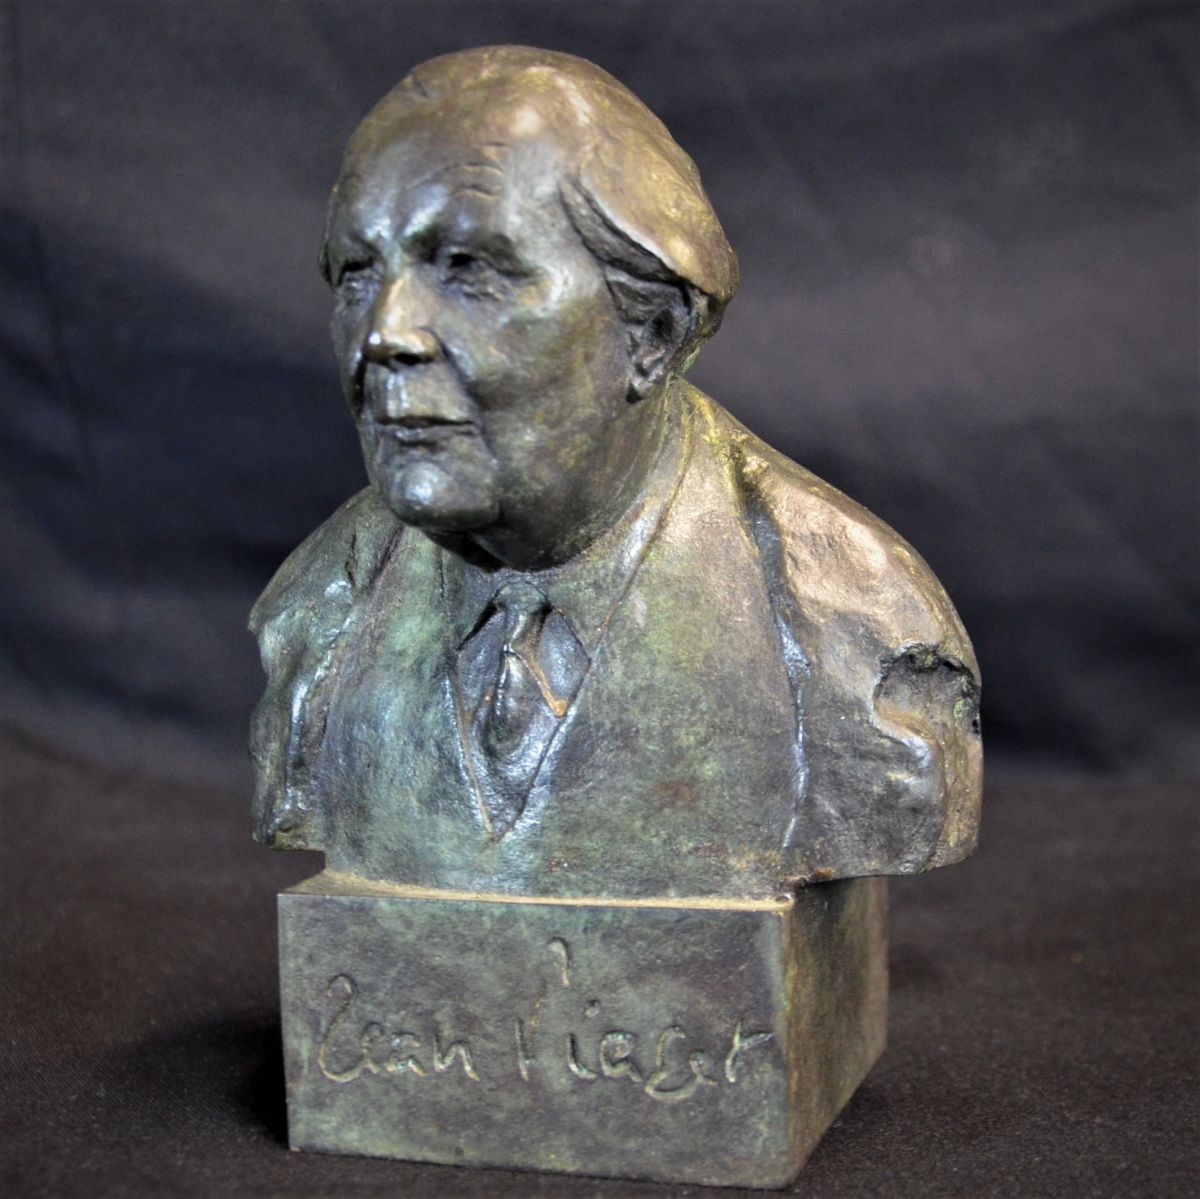  Buste de Jean Piaget, signé au verso sur le socle FRANGIN, daté 96 et numéroté 40 40 fait pour...